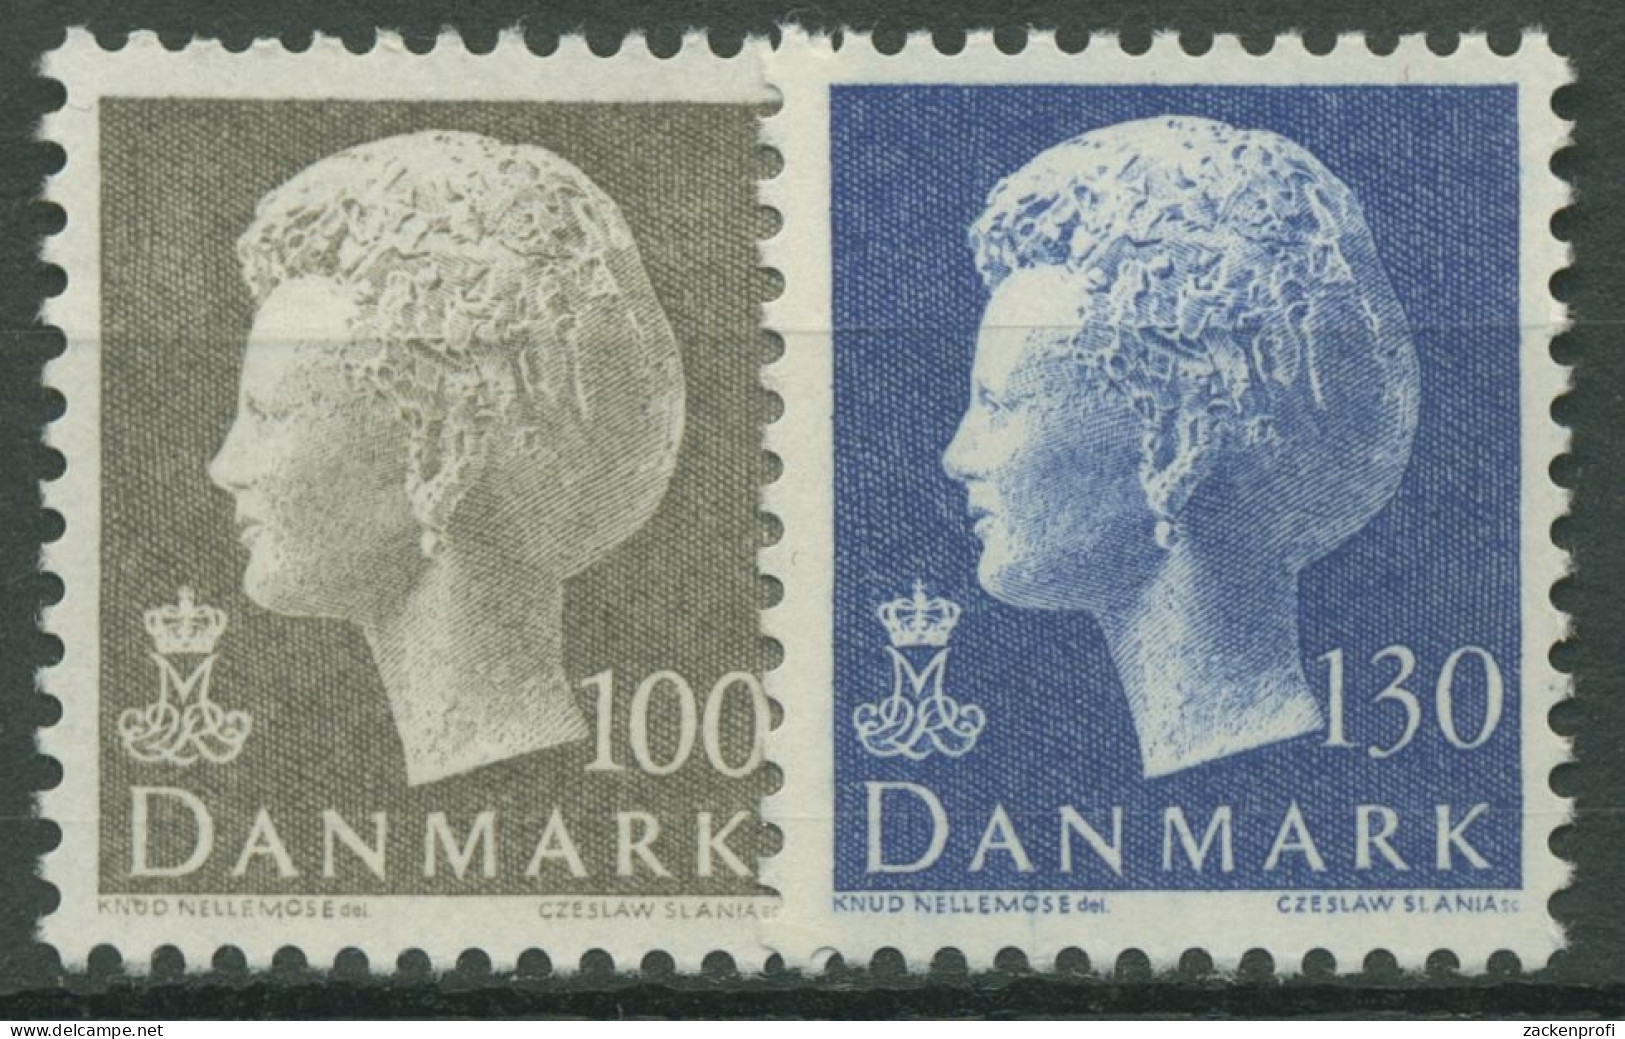 Dänemark 1975 Königin Margrethe II. 584/85 Postfrisch - Ungebraucht